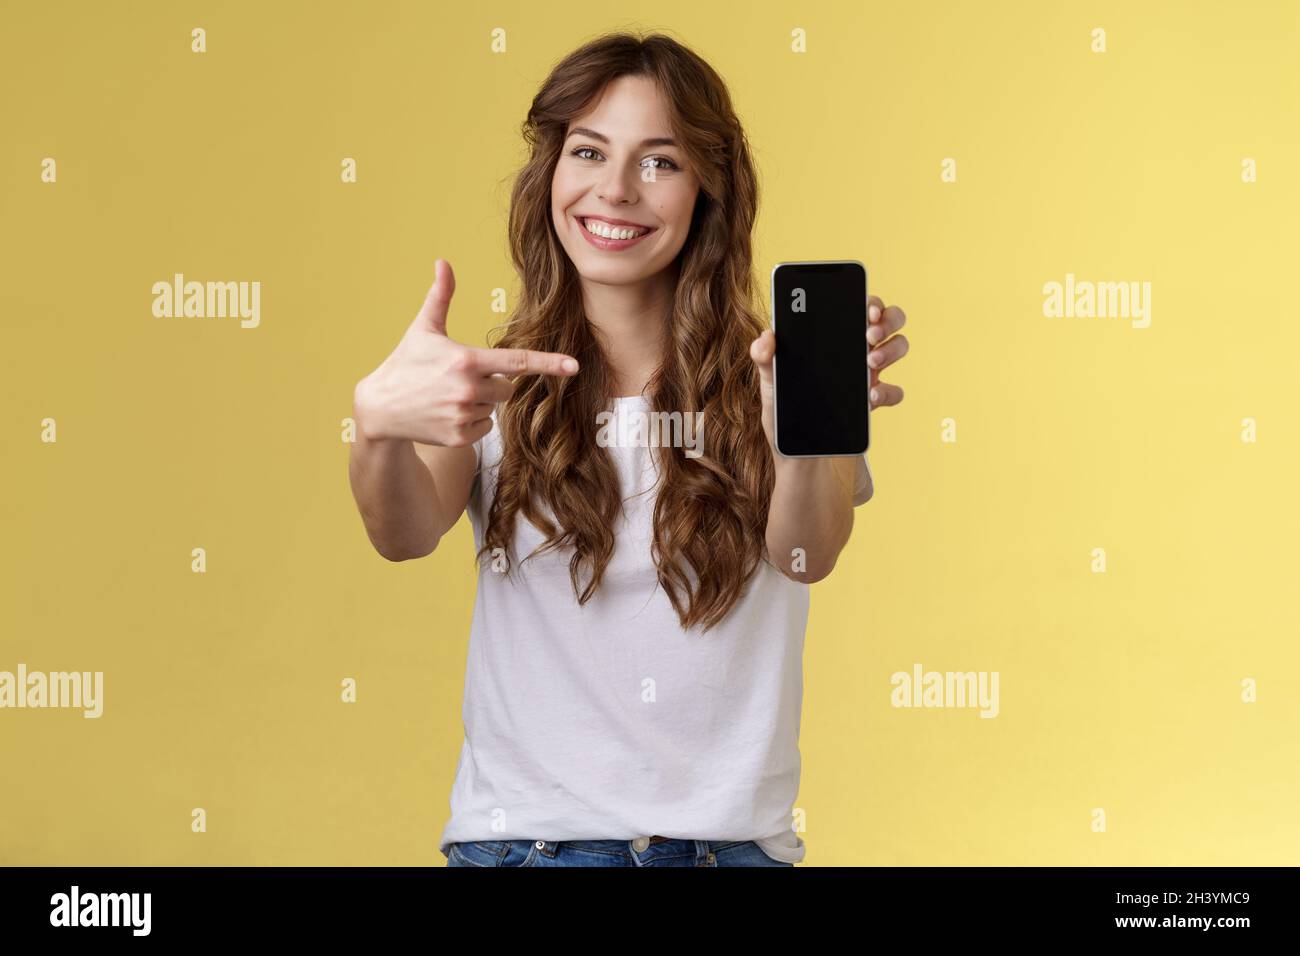 Mujer optimista y segura que muestra la pantalla de un smartphone con fotos que sujeta el teléfono móvil brazo extendido de la cámara que apunta el índice finge Foto de stock